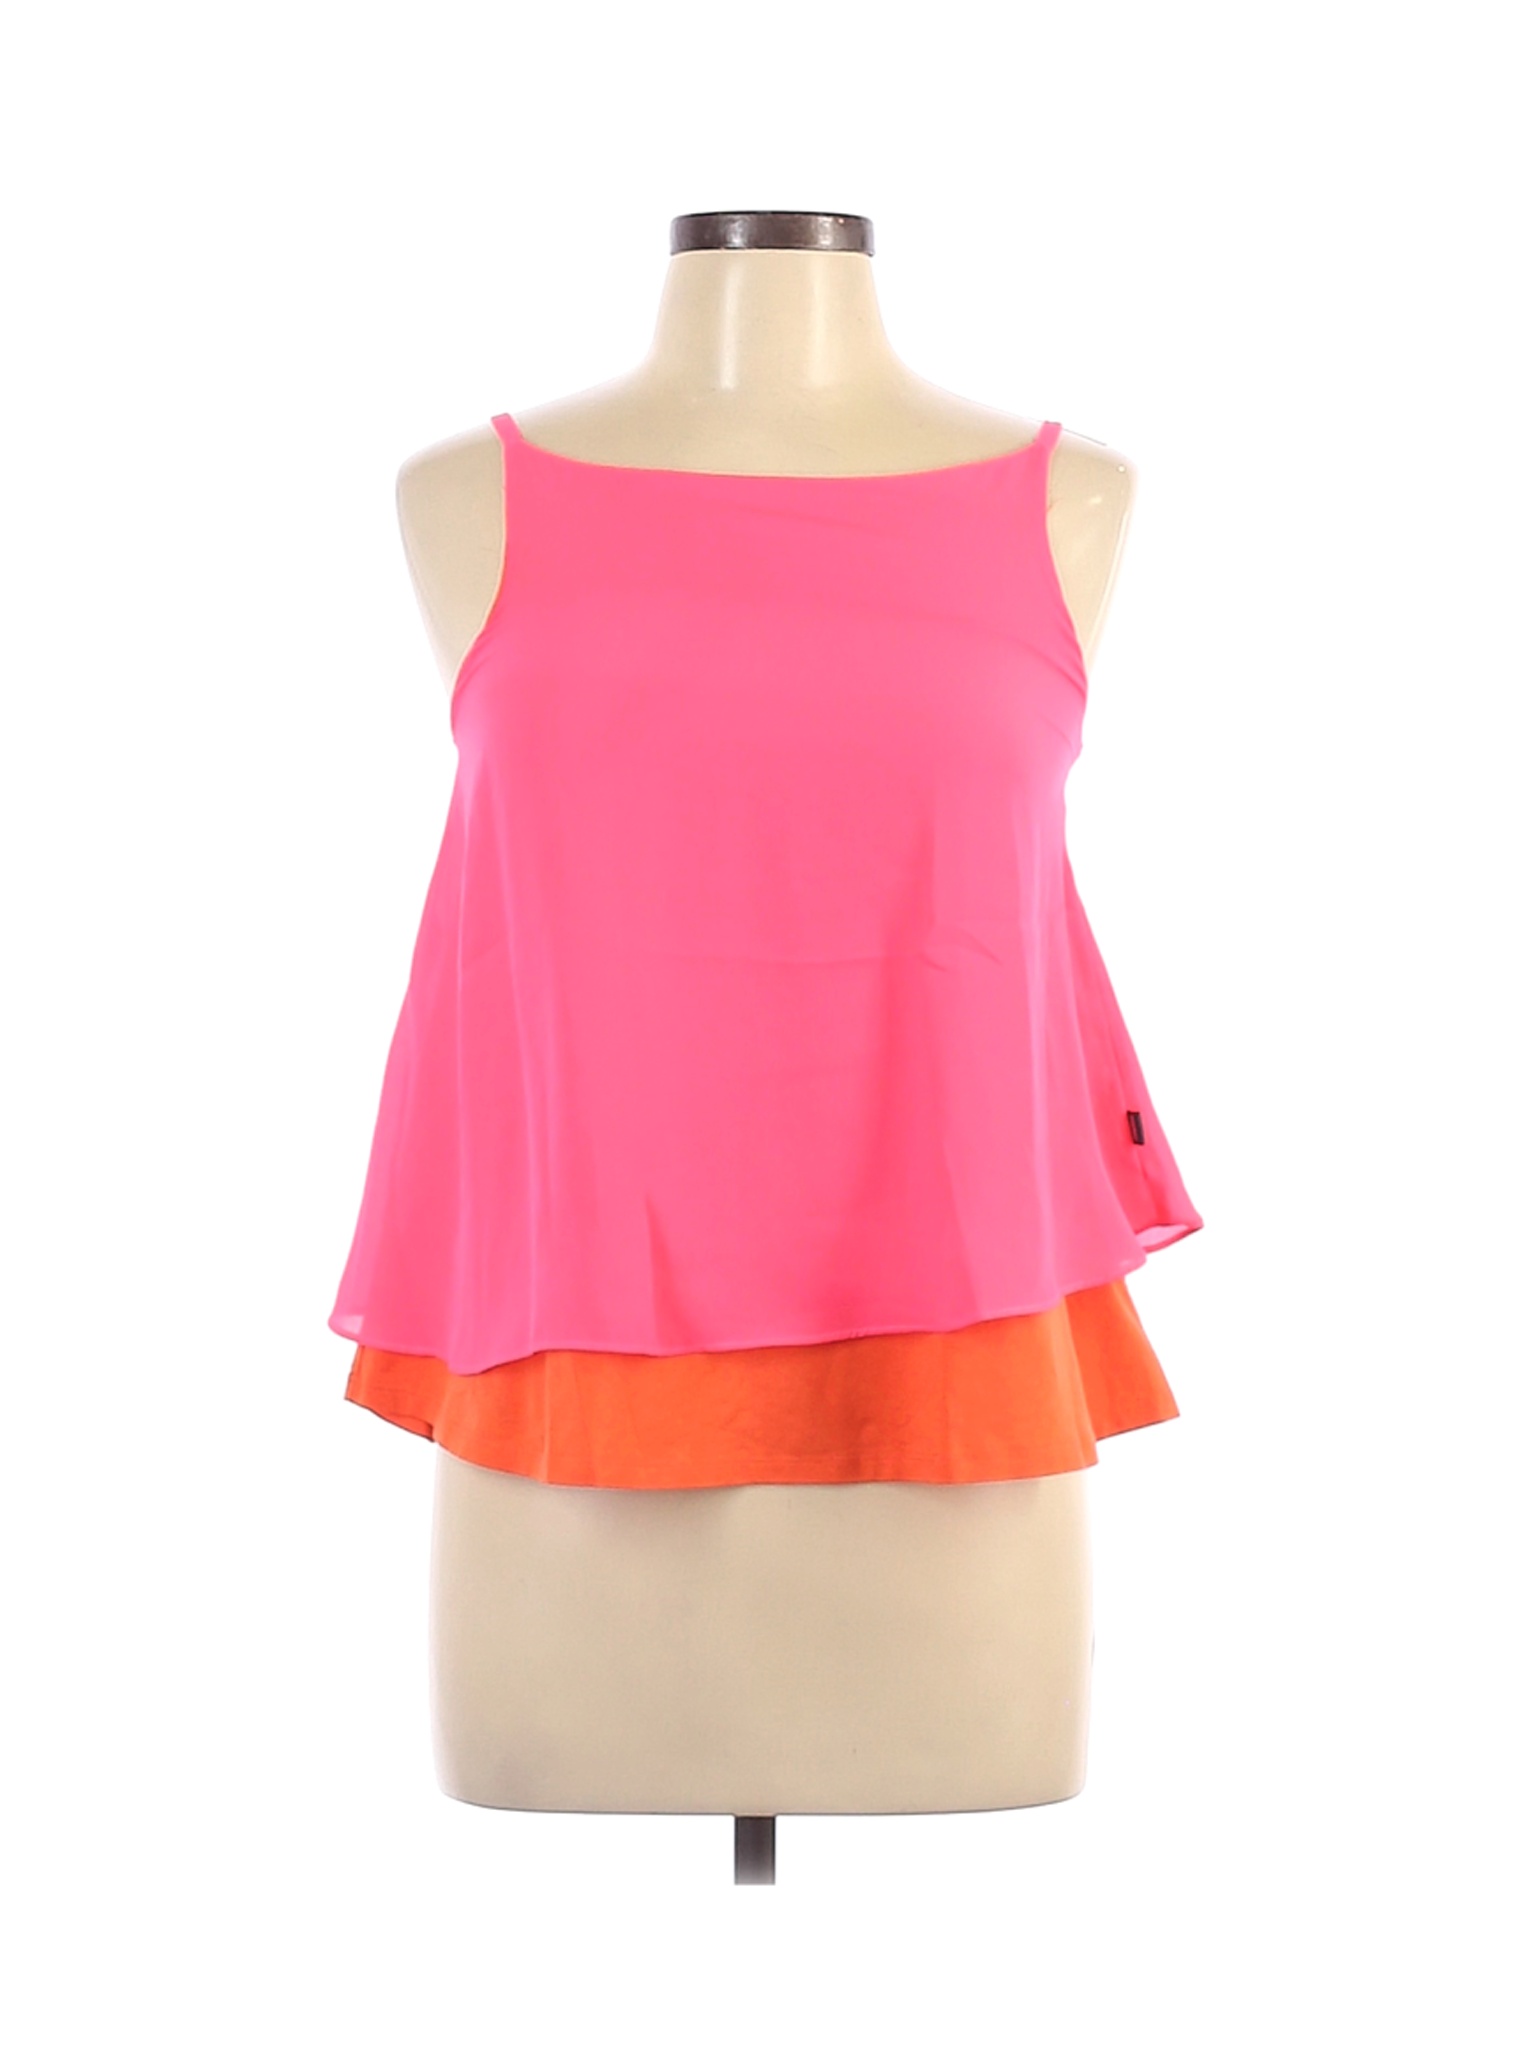 DKNY Women Pink Sleeveless Blouse XL | eBay